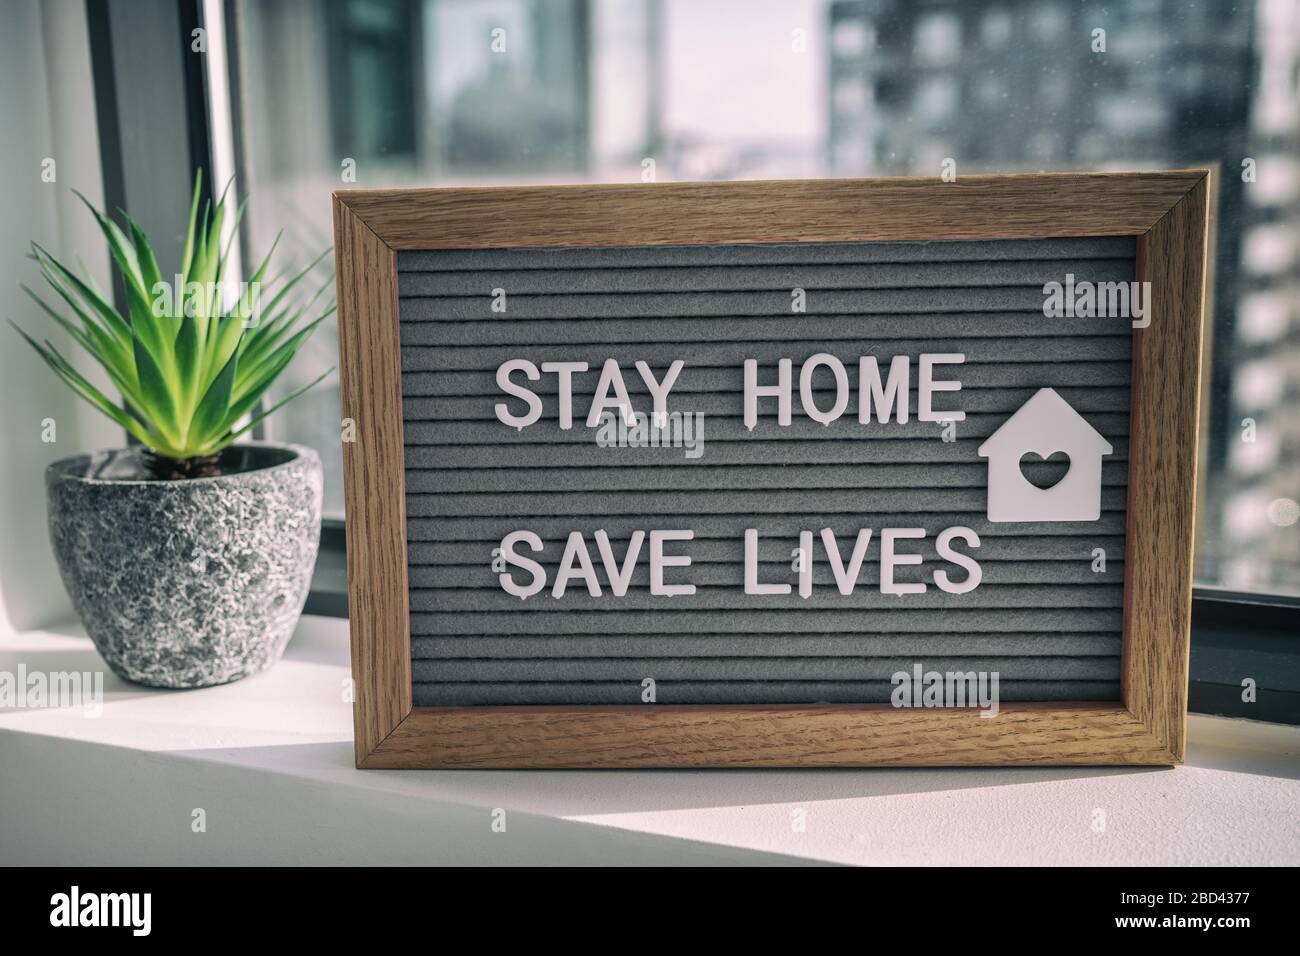 STAY HOME SAVE LIVES Stay home auto quarantena COVID-19 Coronavirus testo messaggio segno per la consapevolezza di distanza sociale. COVID-19 stare a casa sfondo finestra. Appiattire la curva. Foto Stock